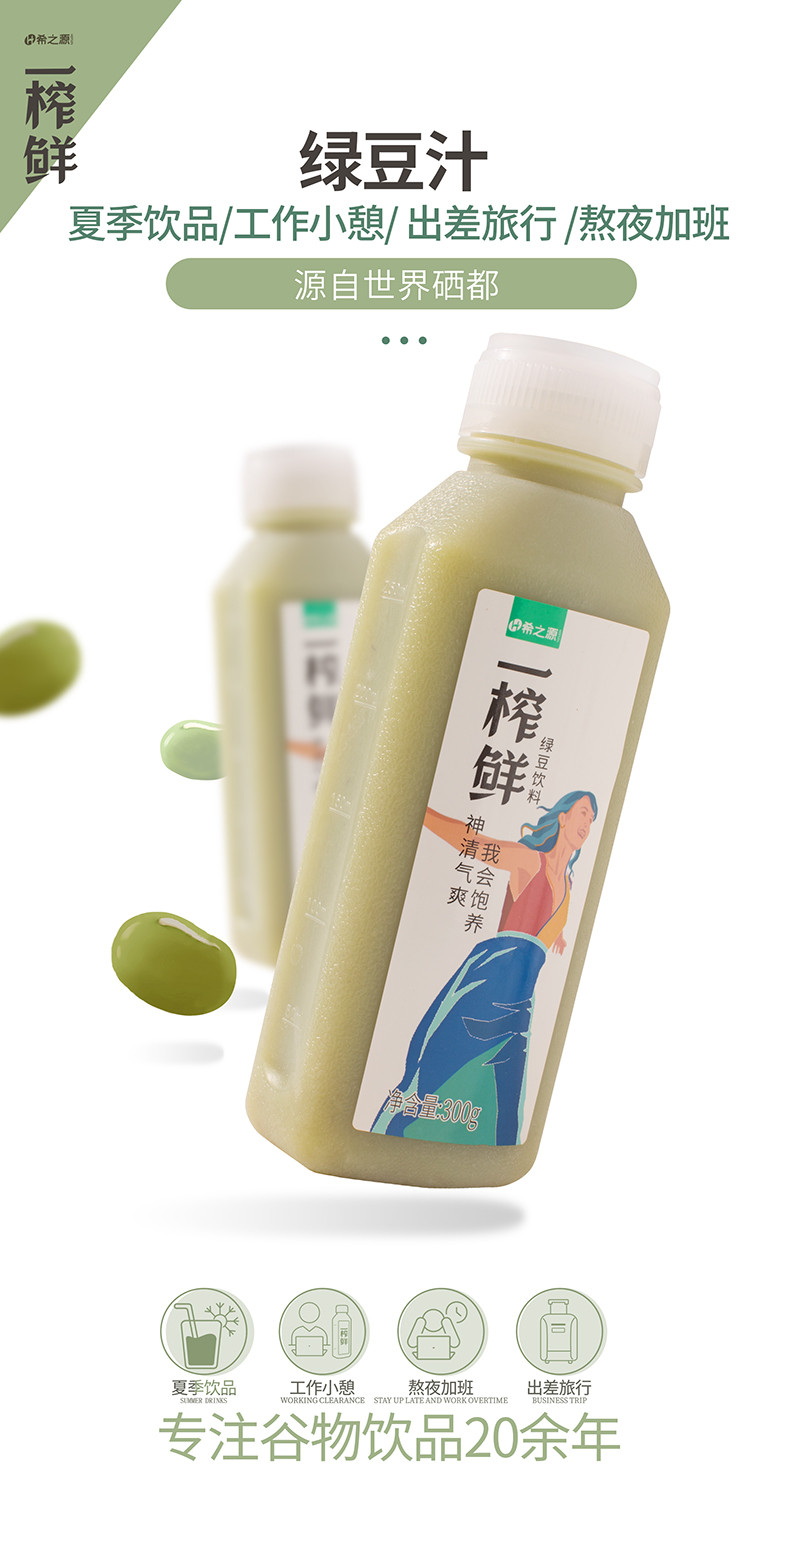 希之源一榨鲜粗粮饮品绿豆汁饮料300g*6瓶装谷物饮料蔬菜汁